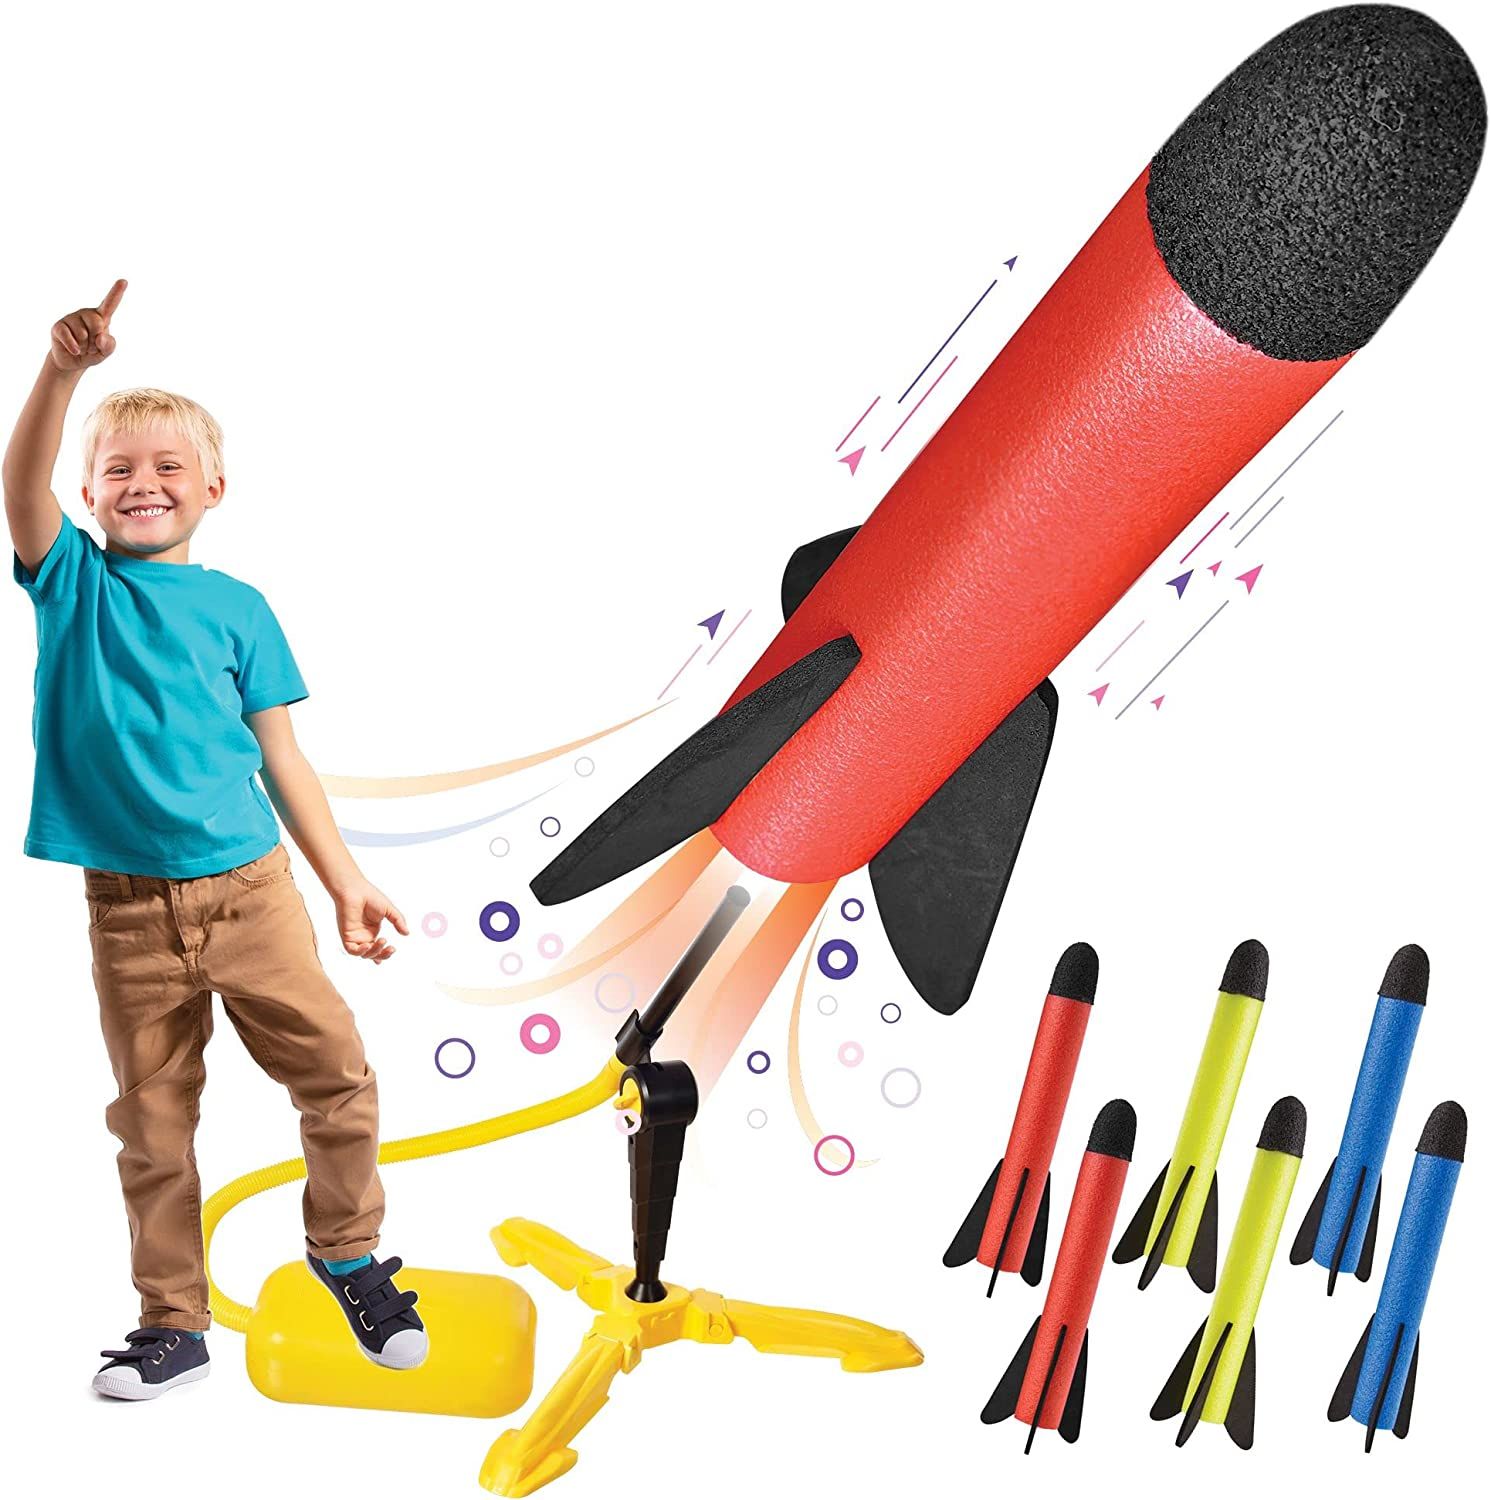 Air Rocket shoot игрушка. Игрушка "ракета". Игрушка ракета для детей. Детская игрушечная ракета.